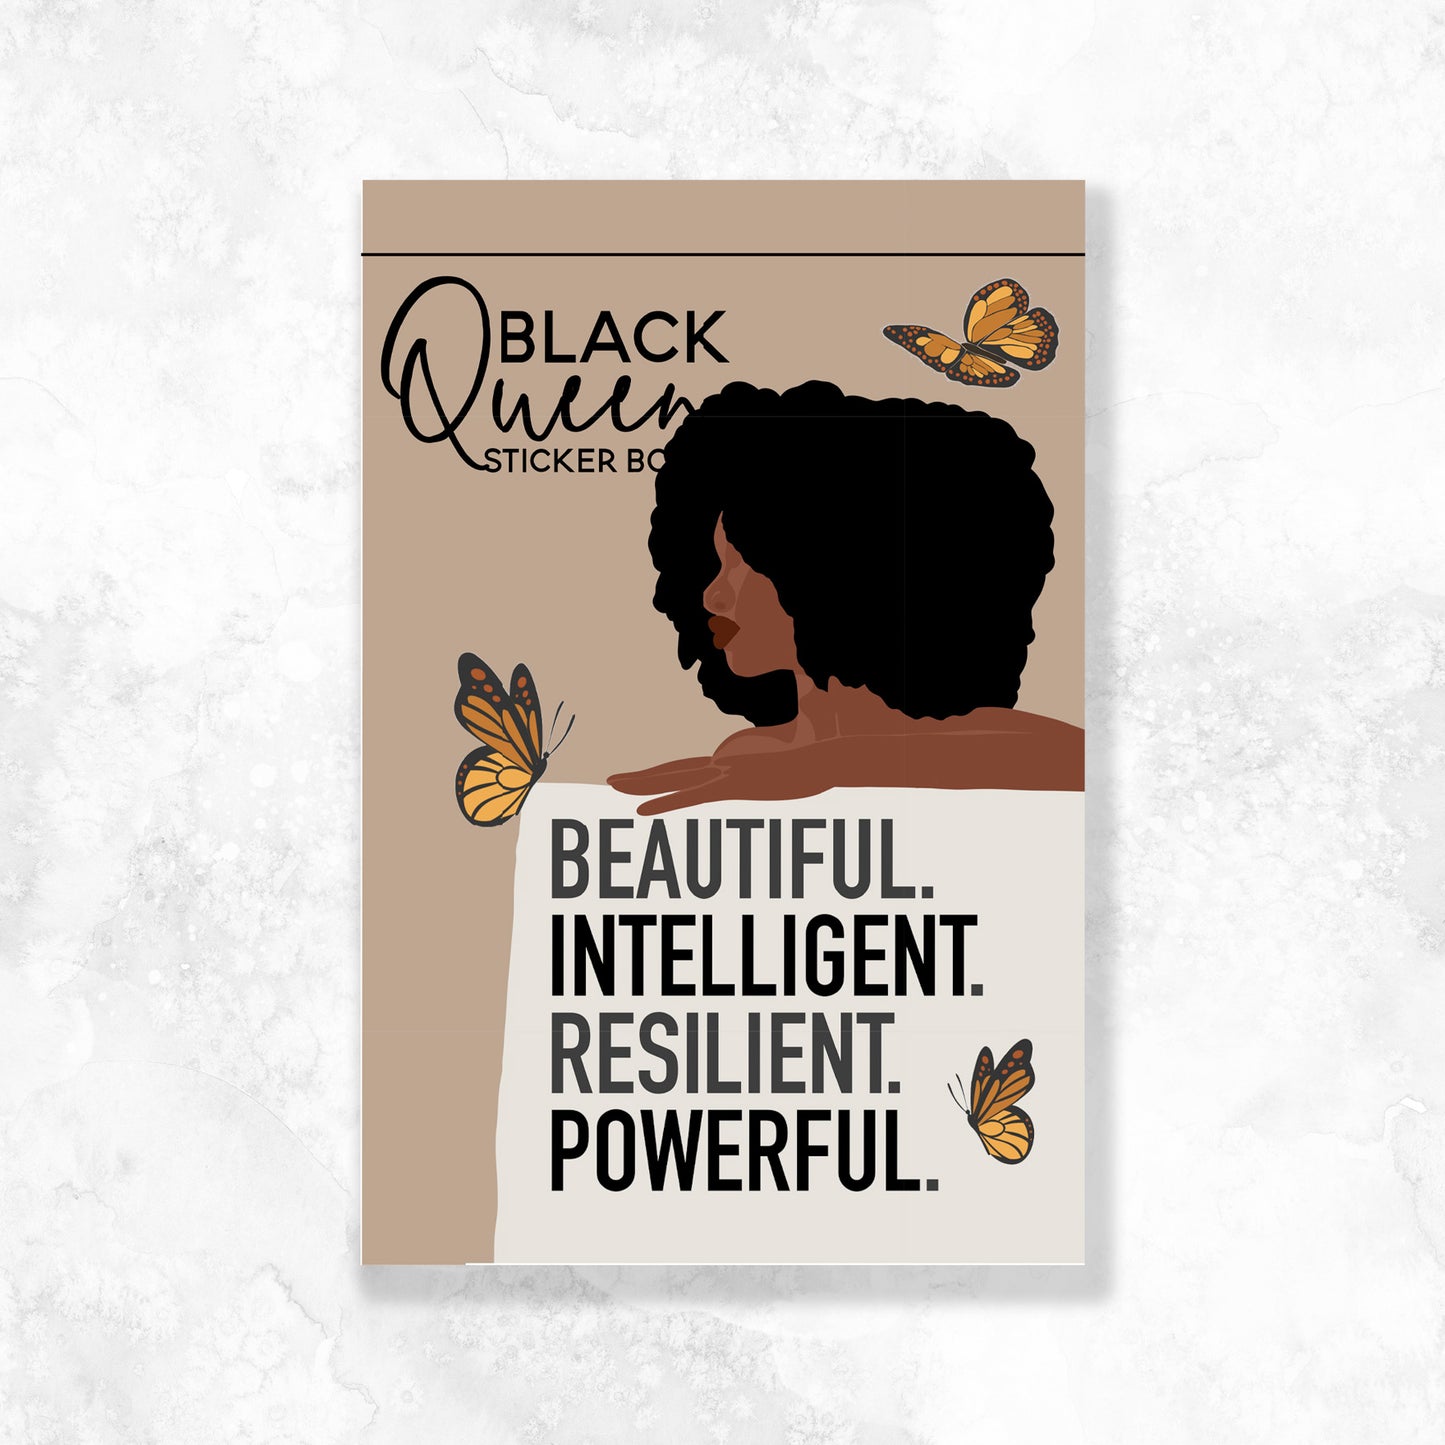 Black Queen Sticker Book